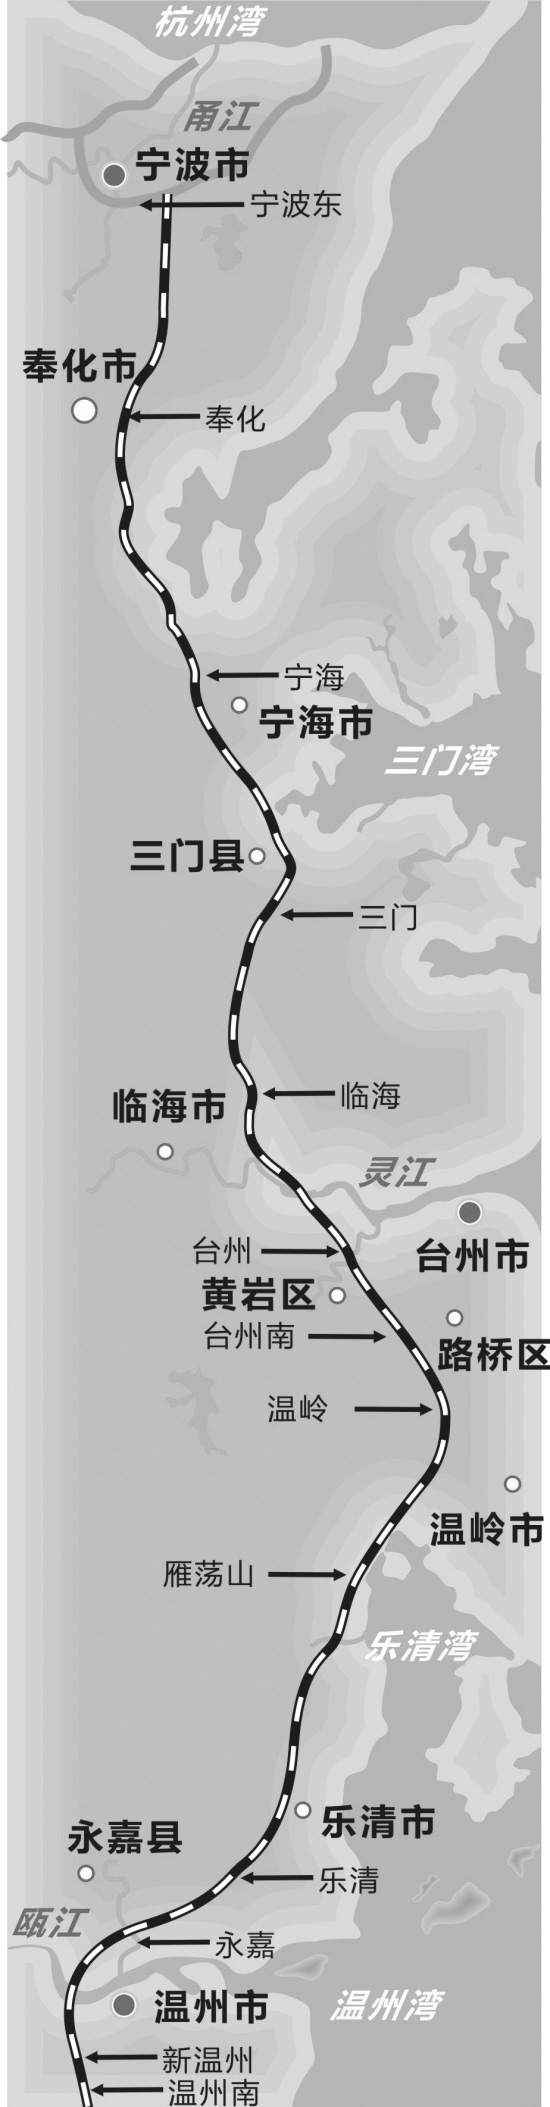 台州终于有了铁路 甬台温,温福铁路10月1日通动车